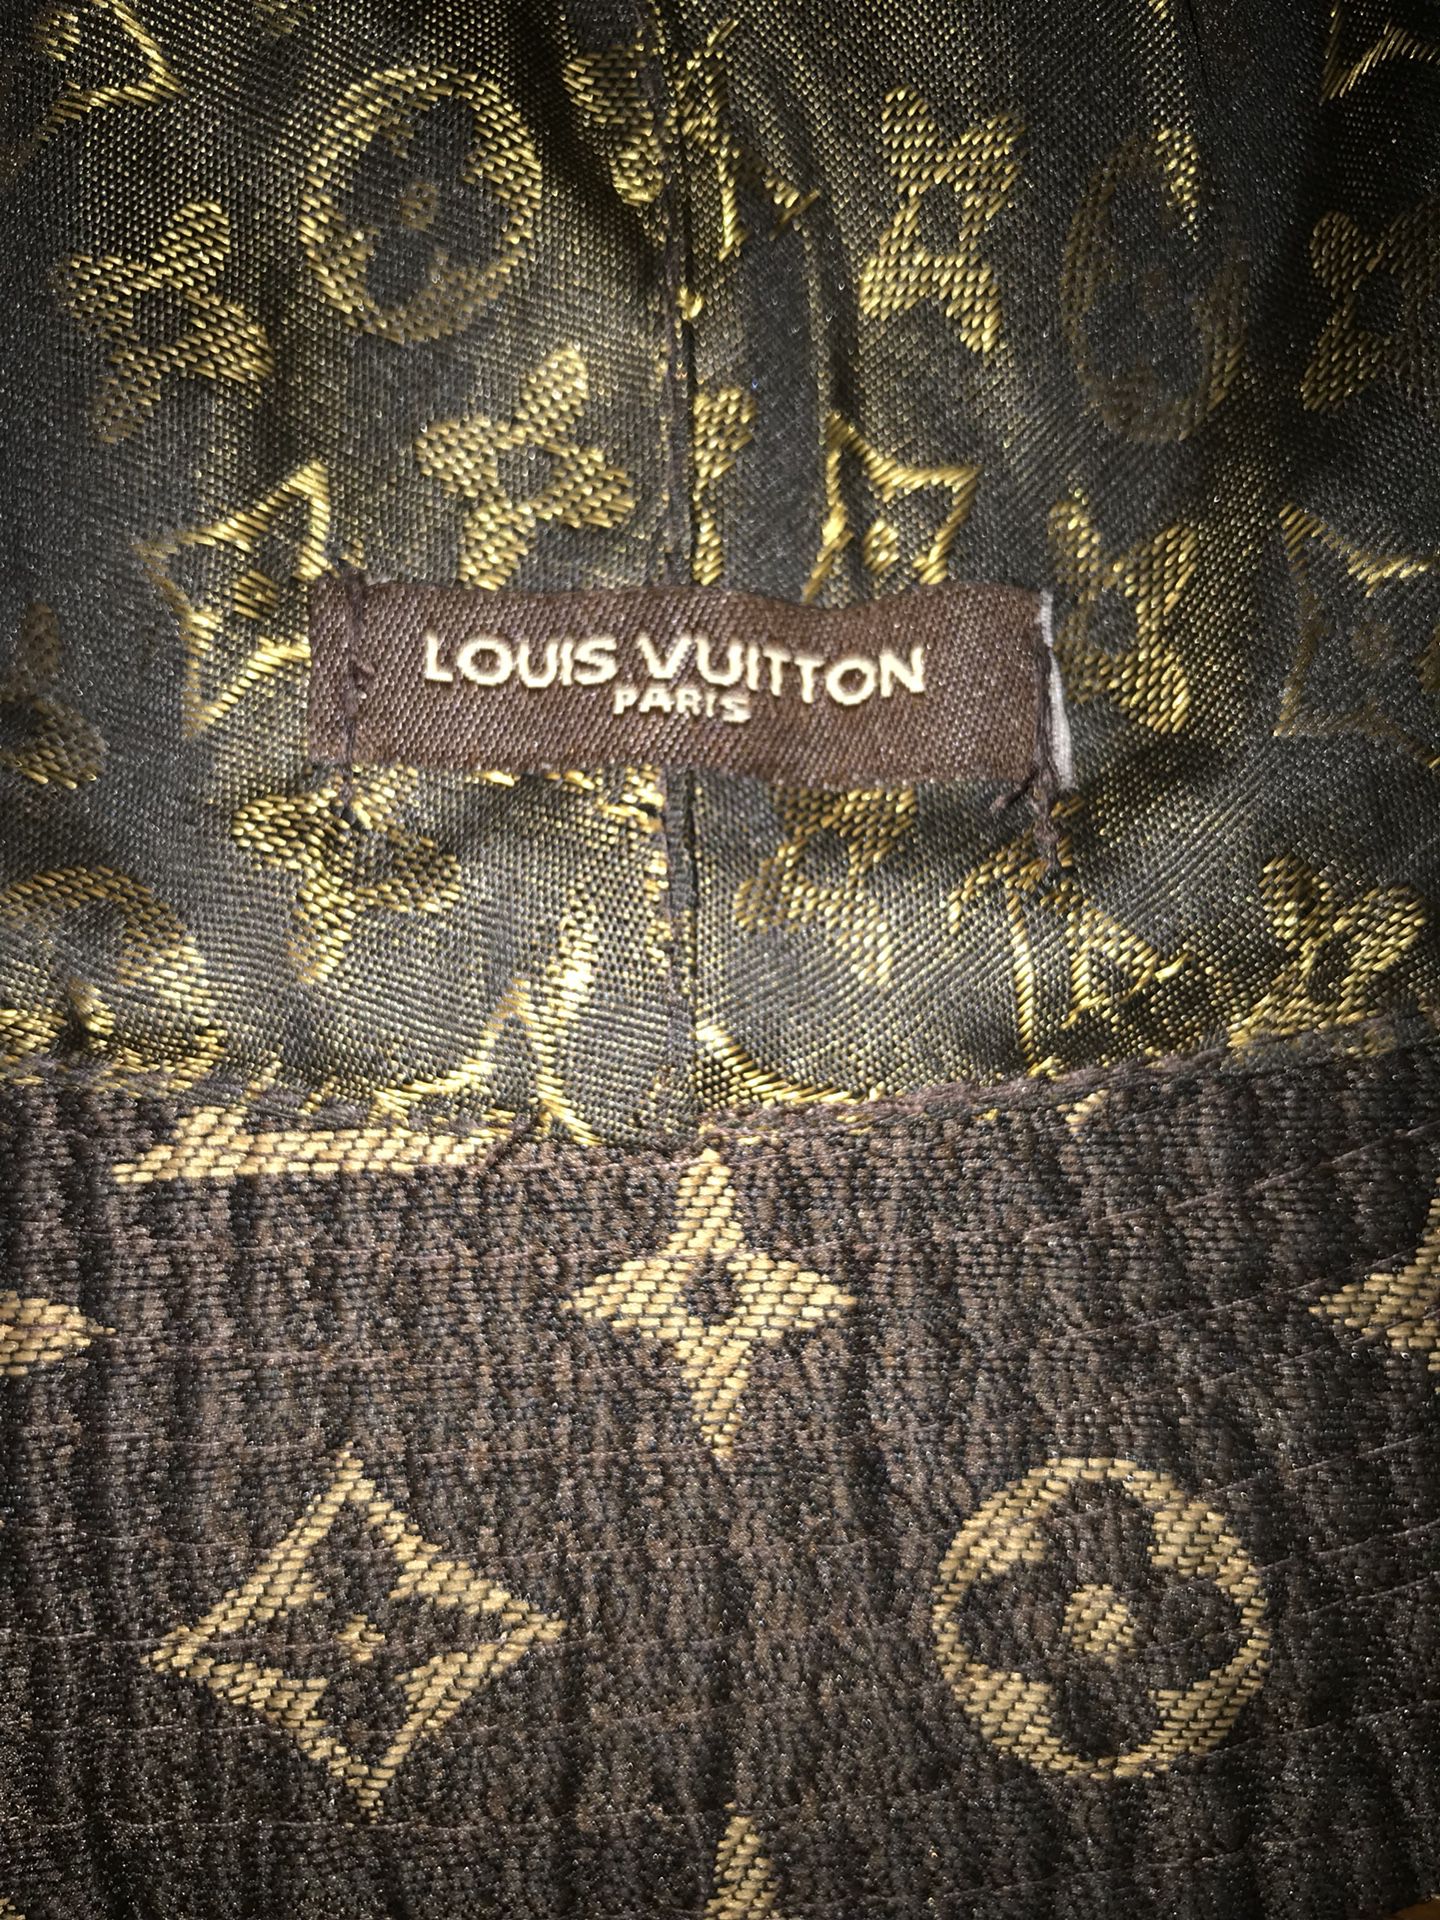 LOUIS VUITTON Wool Winter Hat for Sale in Swansea, MA - OfferUp